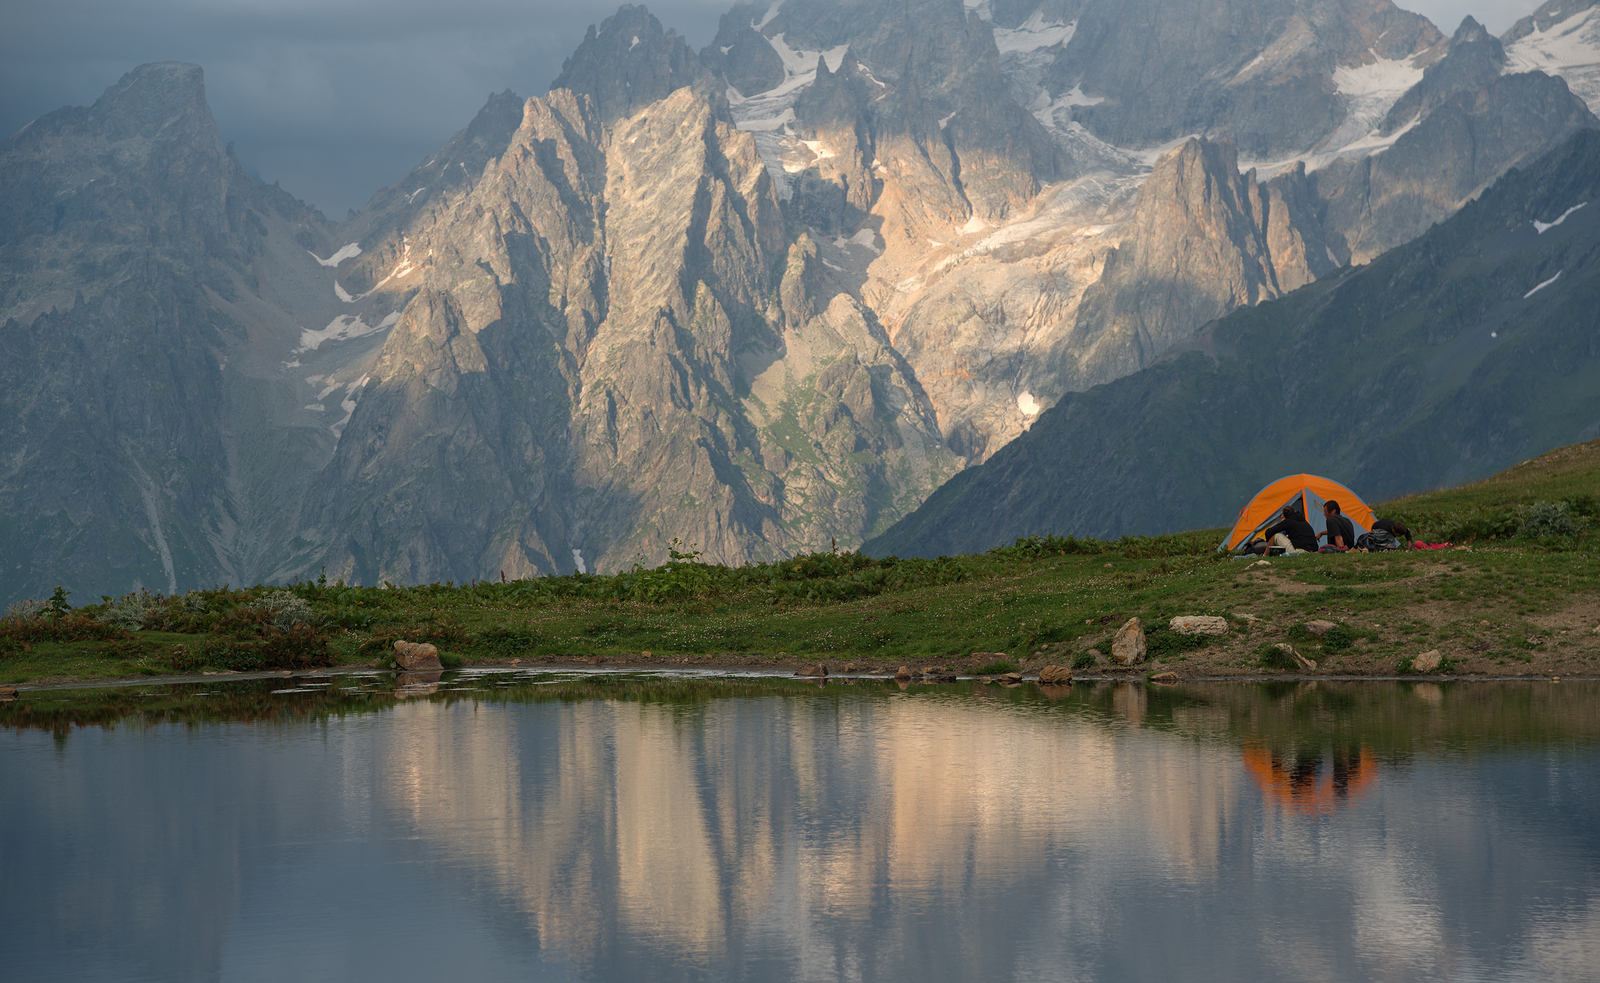 a tent next to a lake